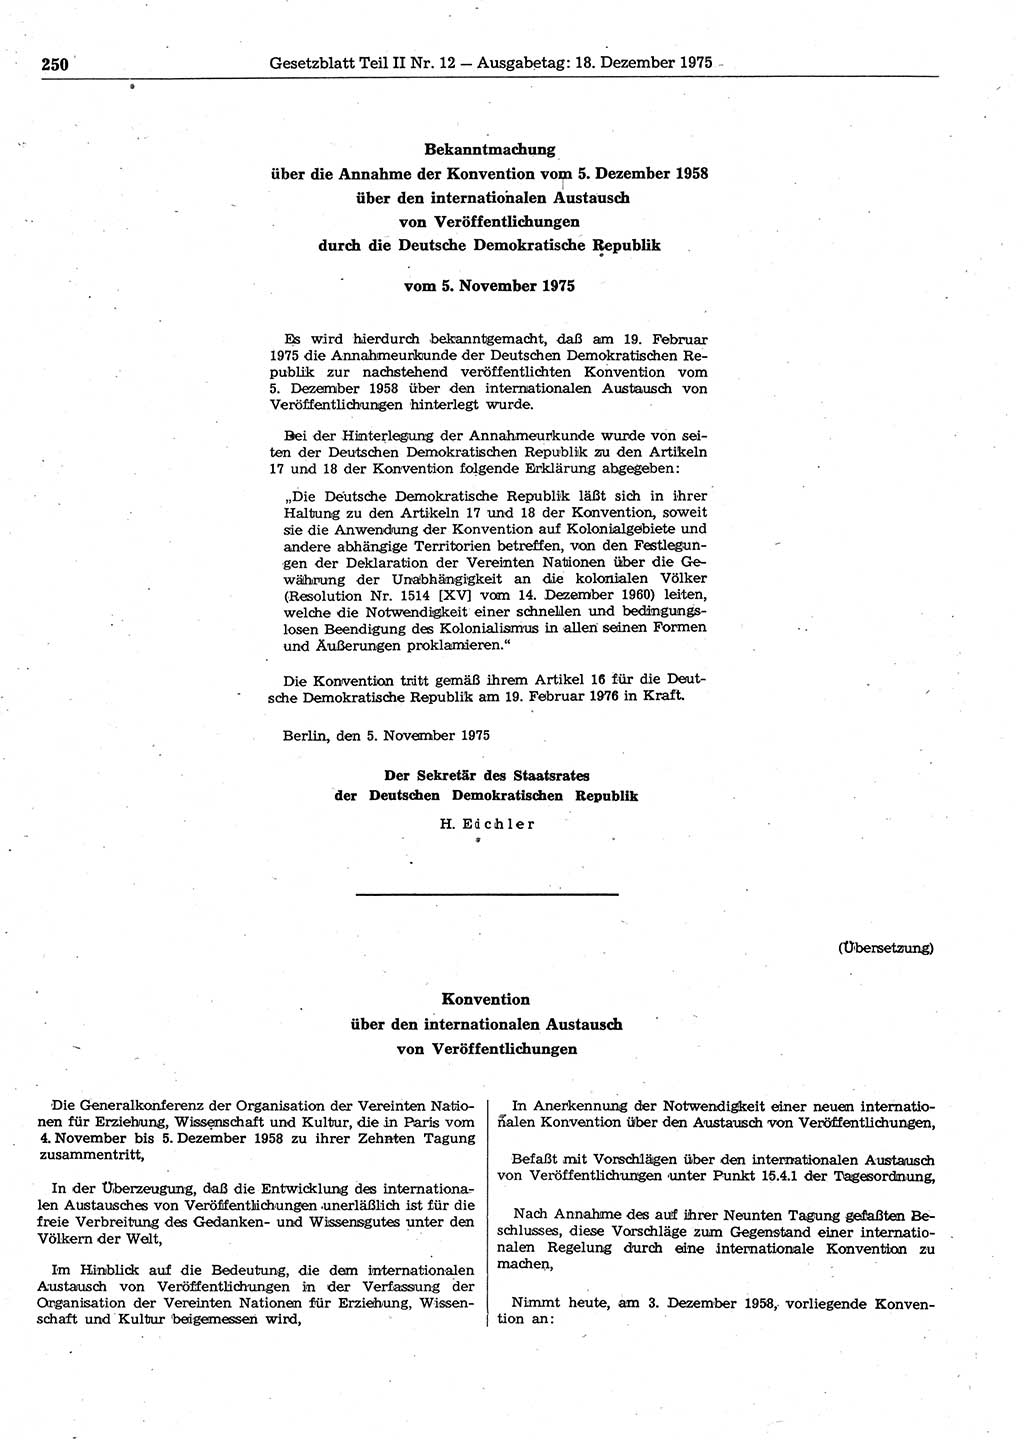 Gesetzblatt (GBl.) der Deutschen Demokratischen Republik (DDR) Teil ⅠⅠ 1975, Seite 250 (GBl. DDR ⅠⅠ 1975, S. 250)